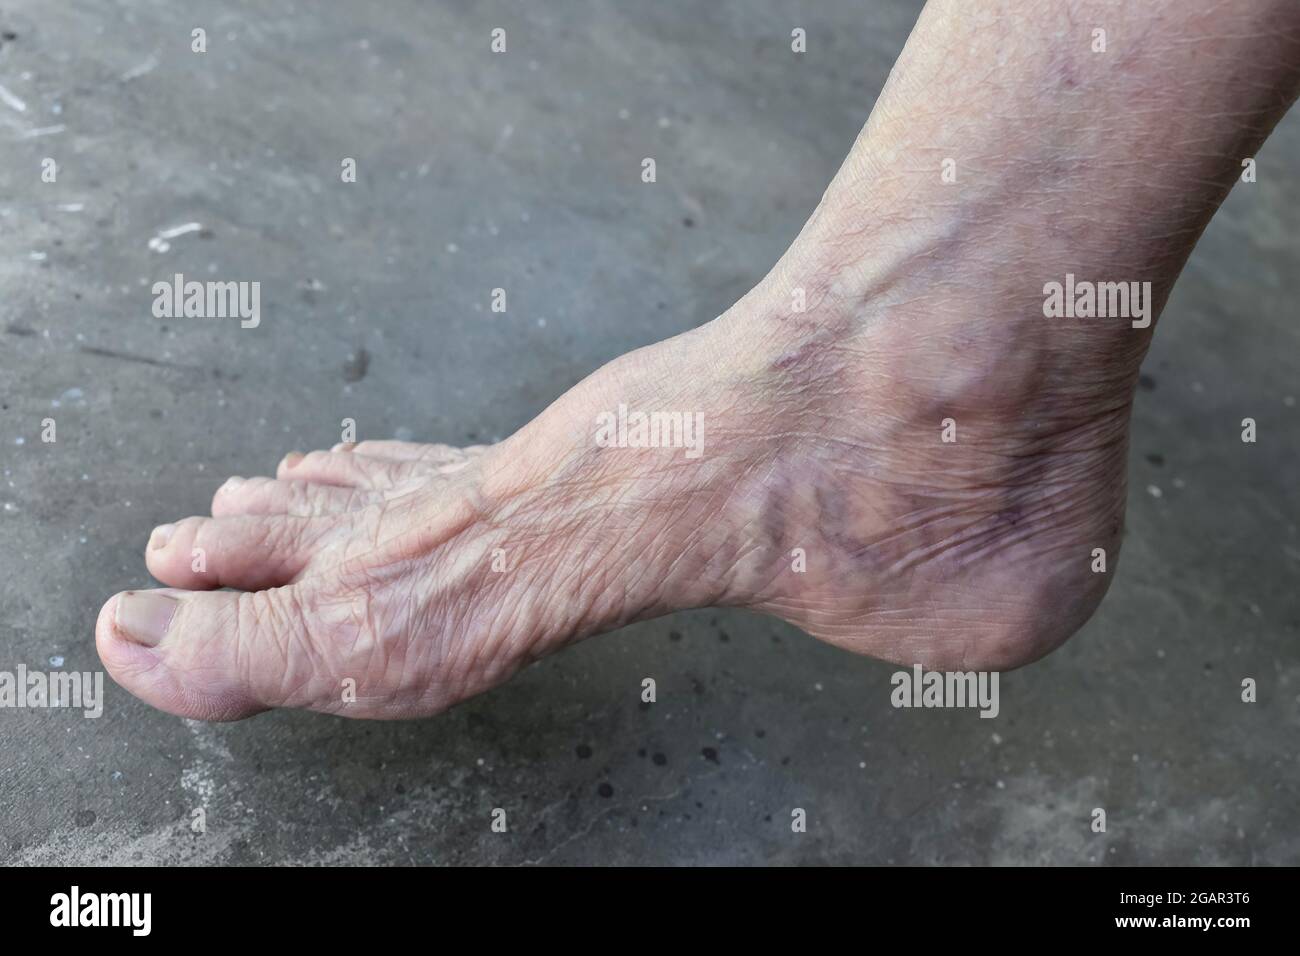 Sud-est asiatico, il piede di vista laterale della vecchia donna del Myanmar. Le pieghe della pelle, la pelle allentata e le vene mostrano invecchiamento. Isolato su fondo di cemento. Foto Stock